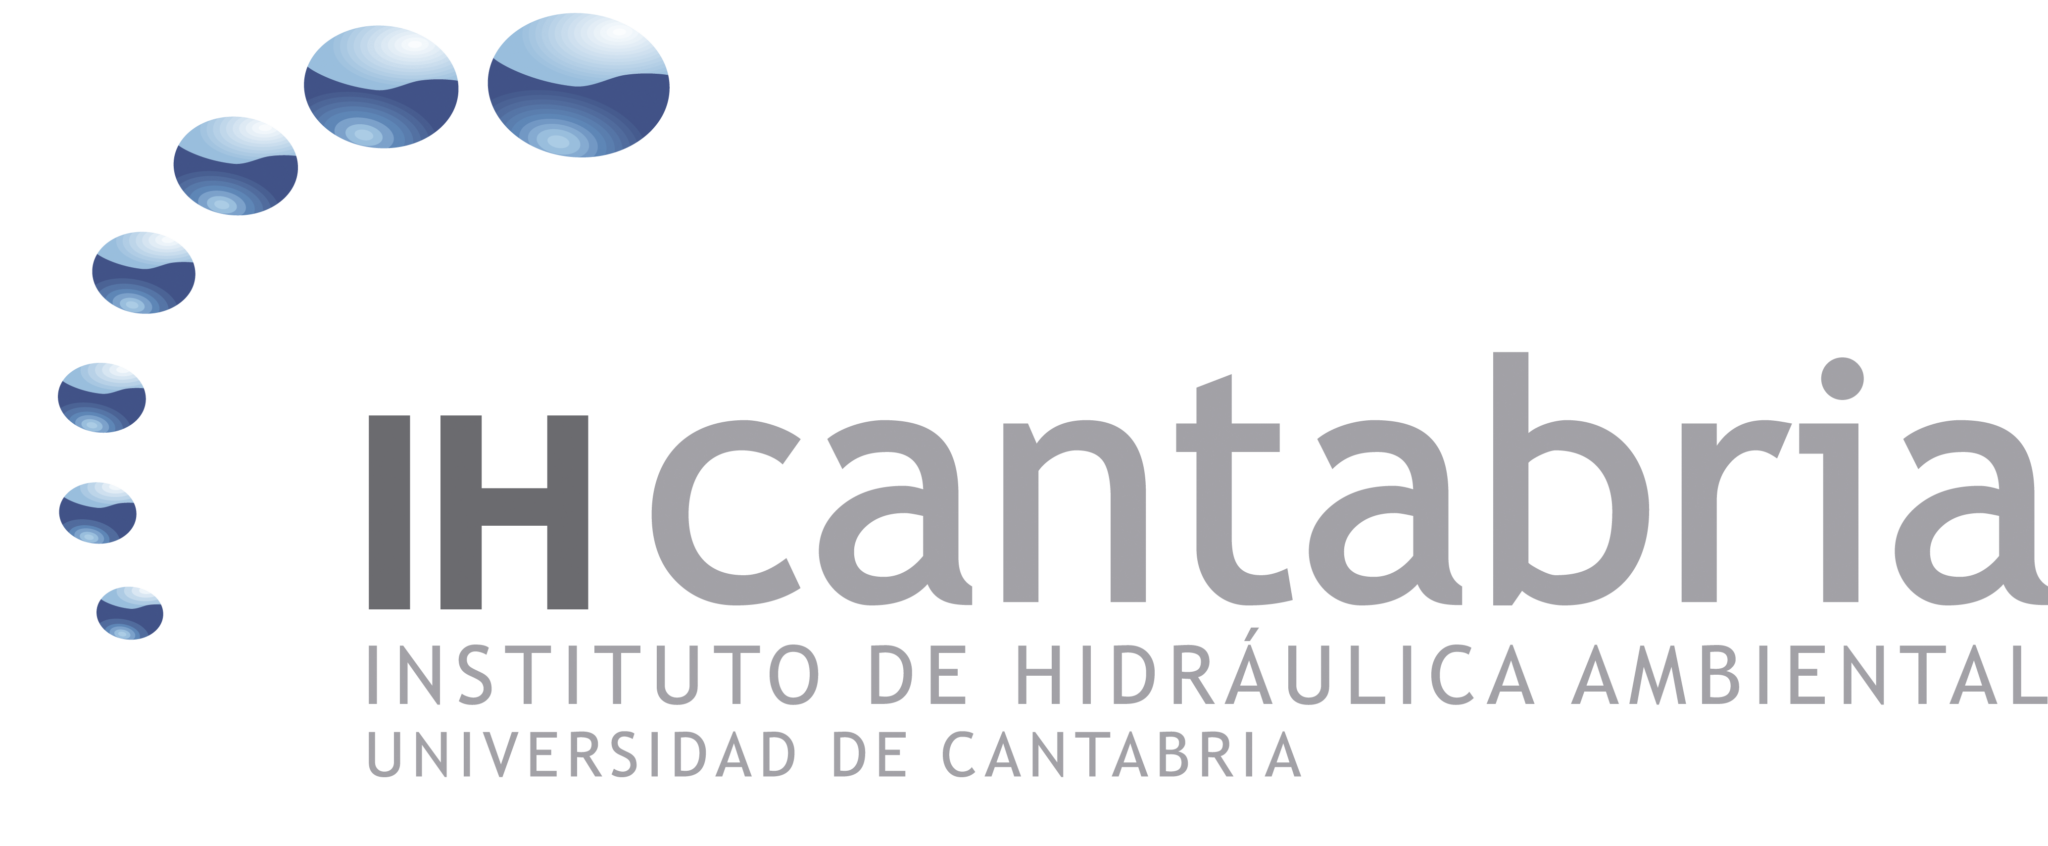 IHCantabria || Instituto de Hidráulica Ambiental de la Universidad de  Cantabria